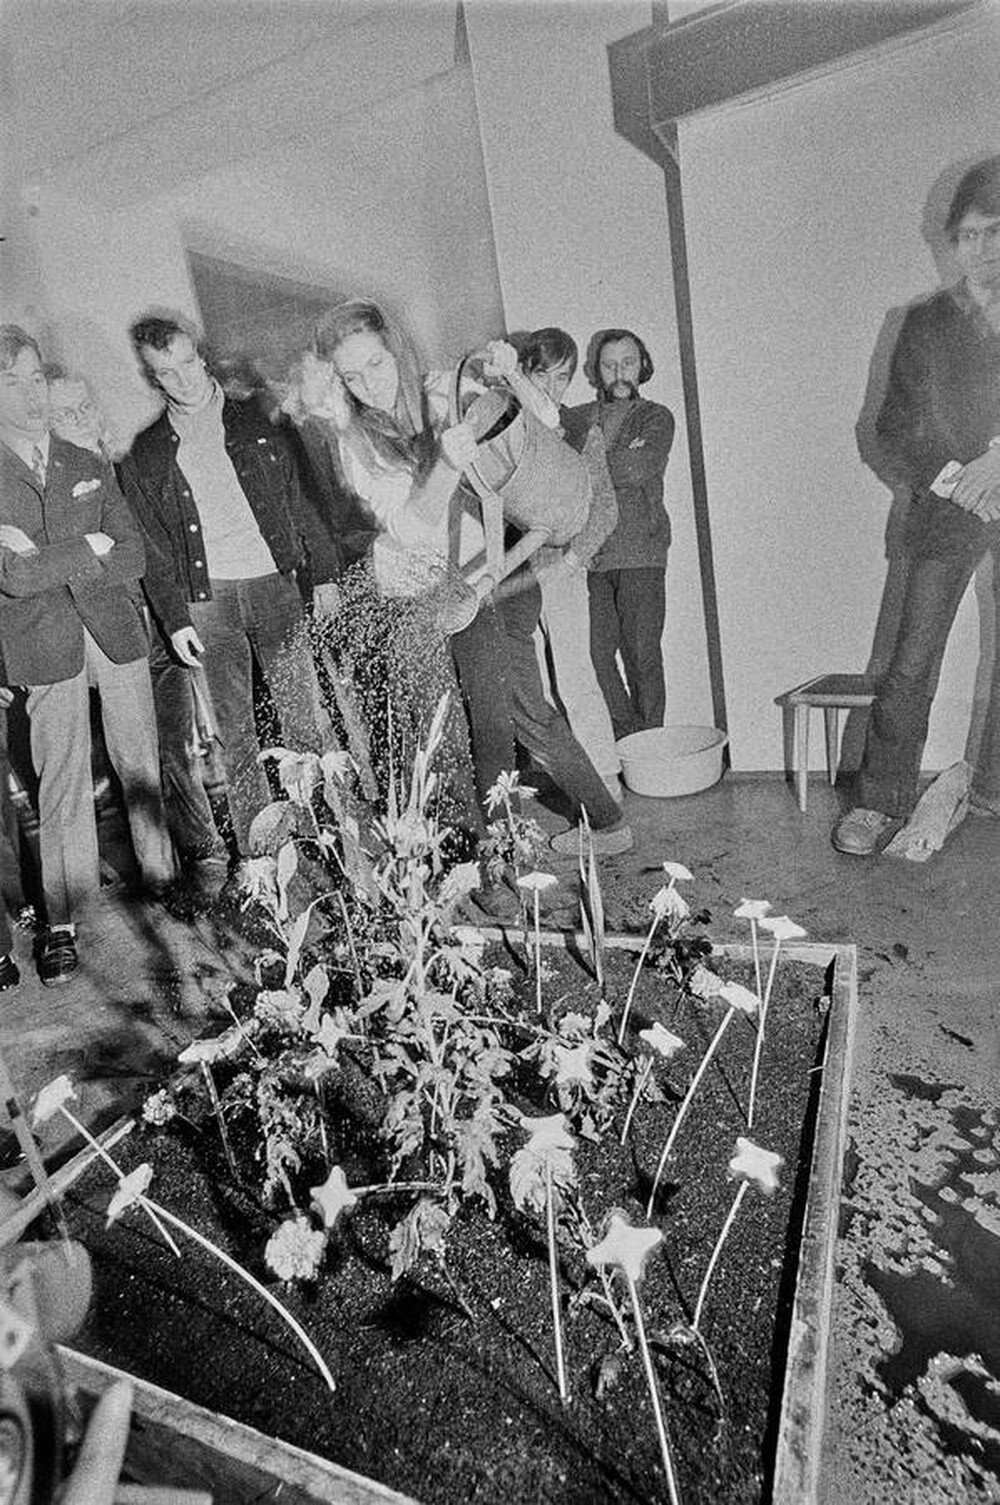 Krzysztof Zarębski, performance of "Flowers", Women's League Club, Warsaw, 1971